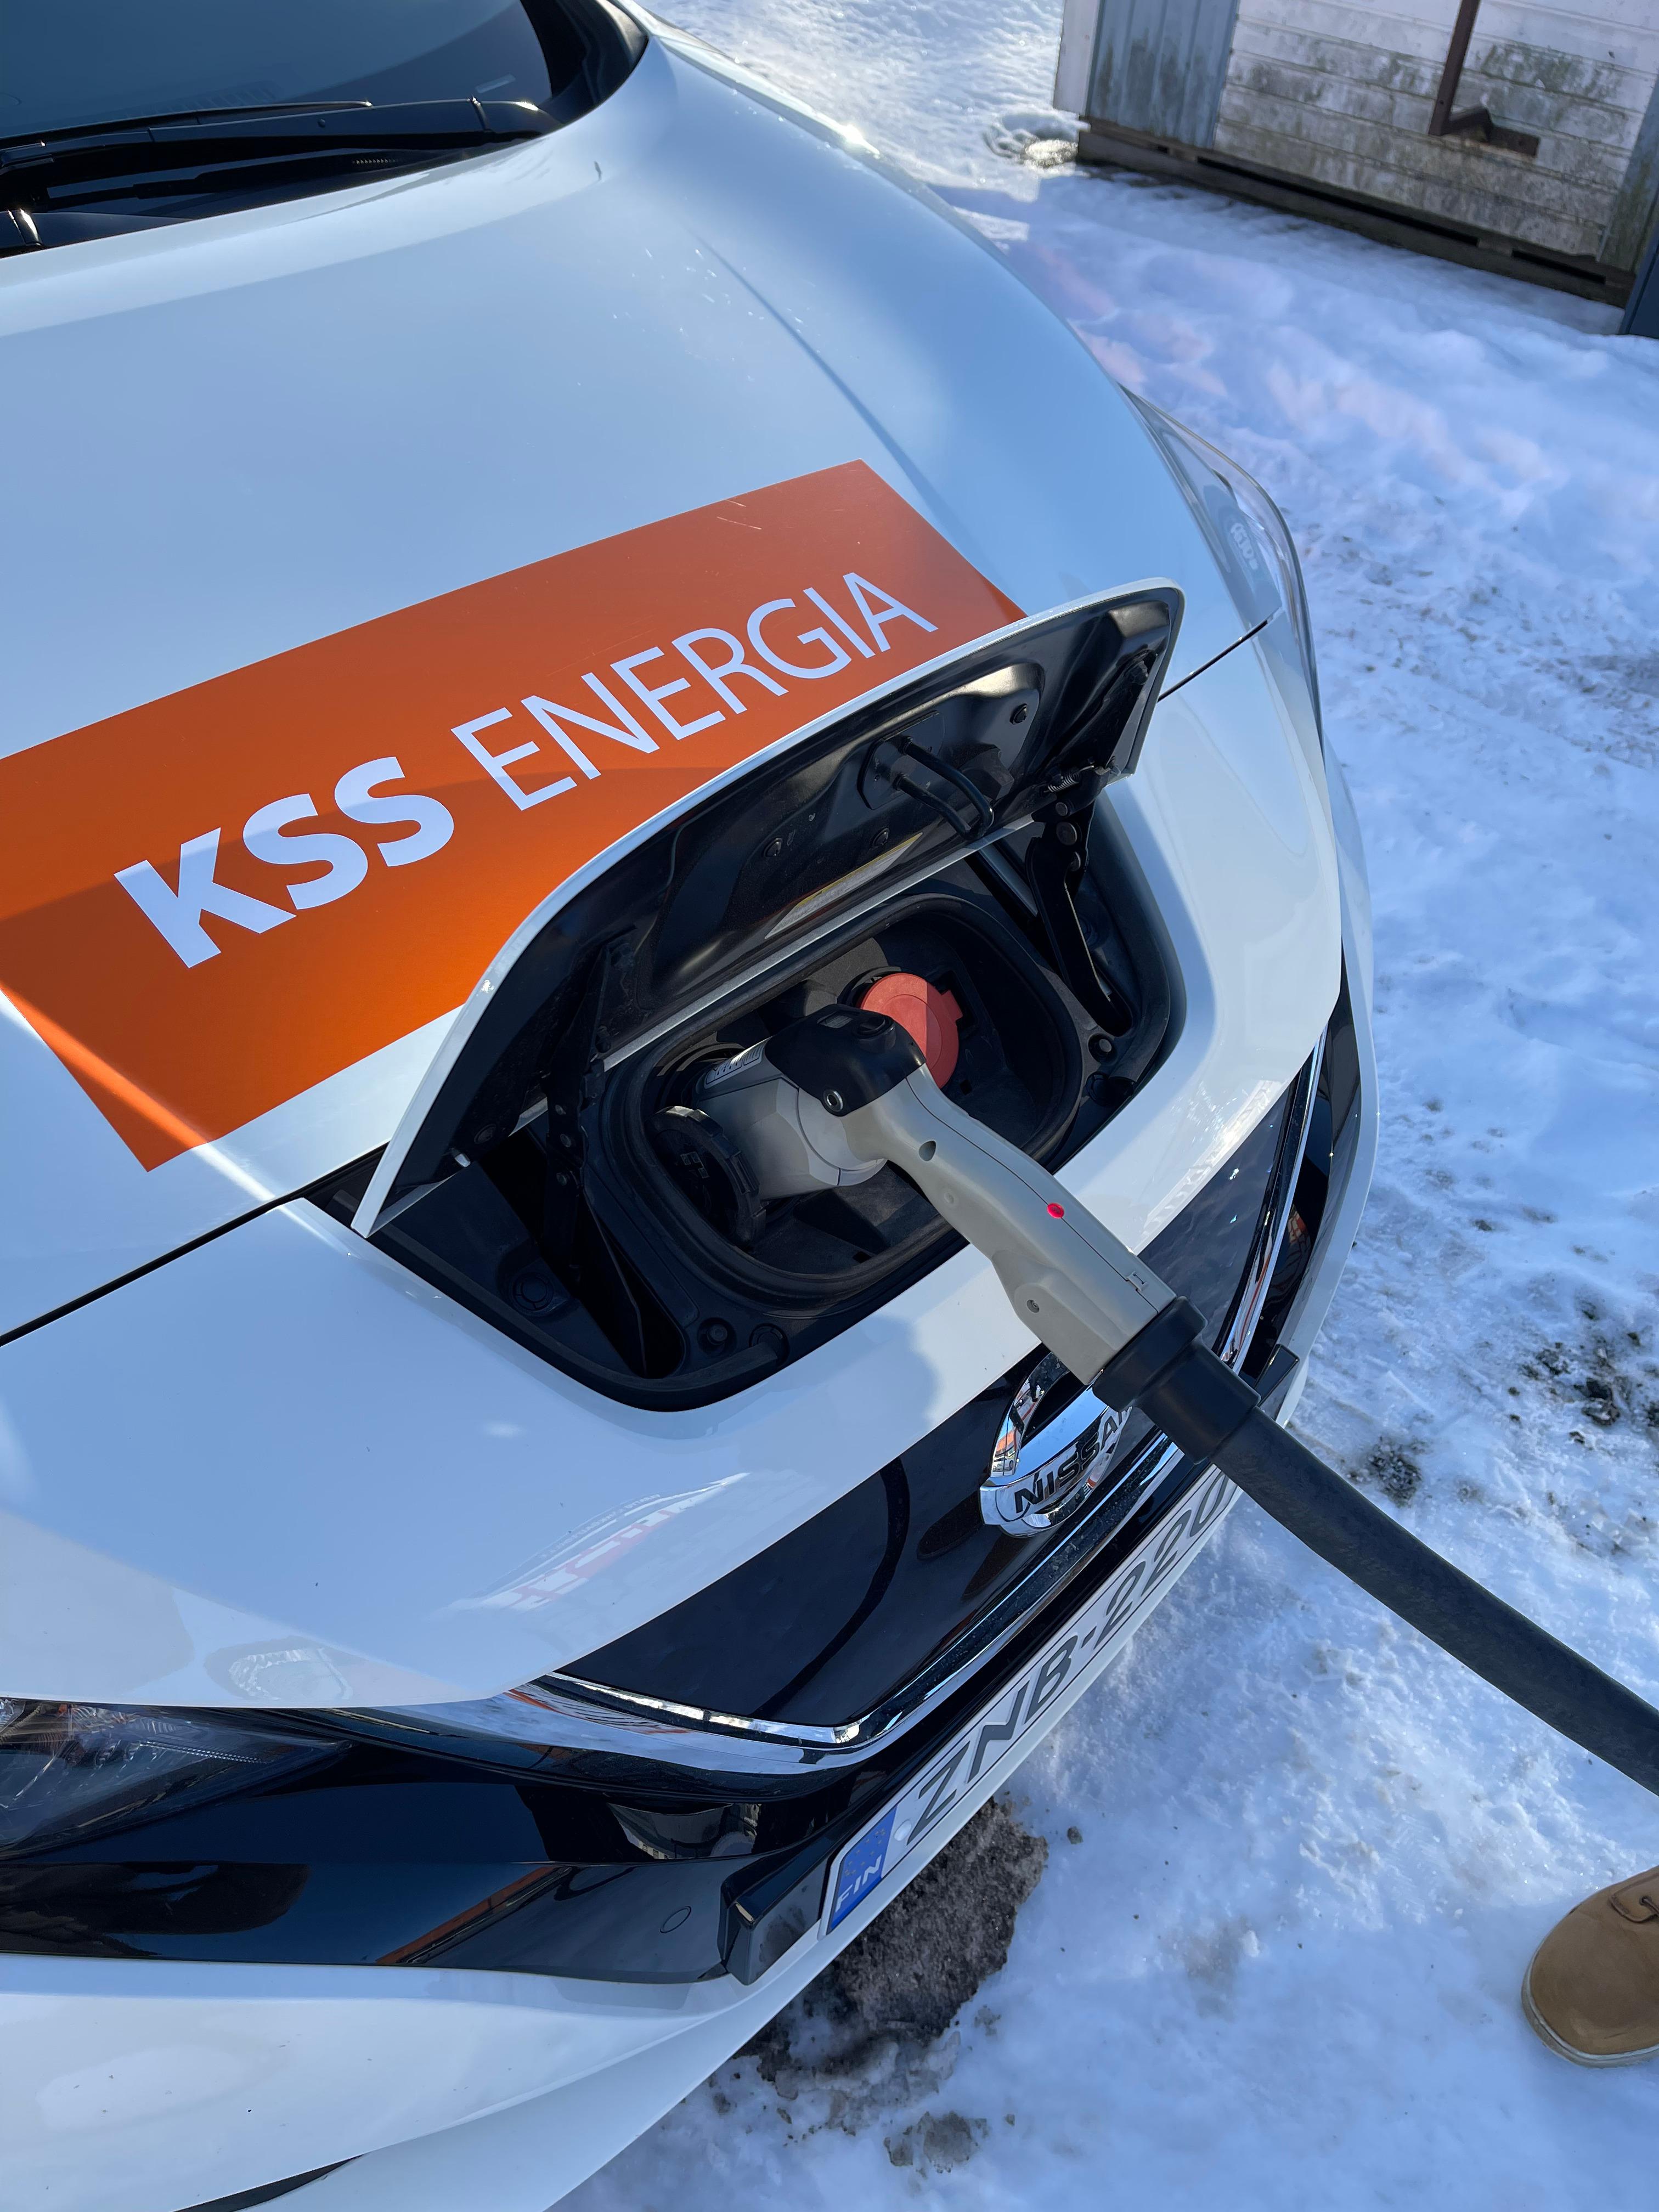 Valkoinen auto, jonka etuosassa on KSS Energian logo on latauksessa sähköauton latauspisteellä. Taustalla on lunta.